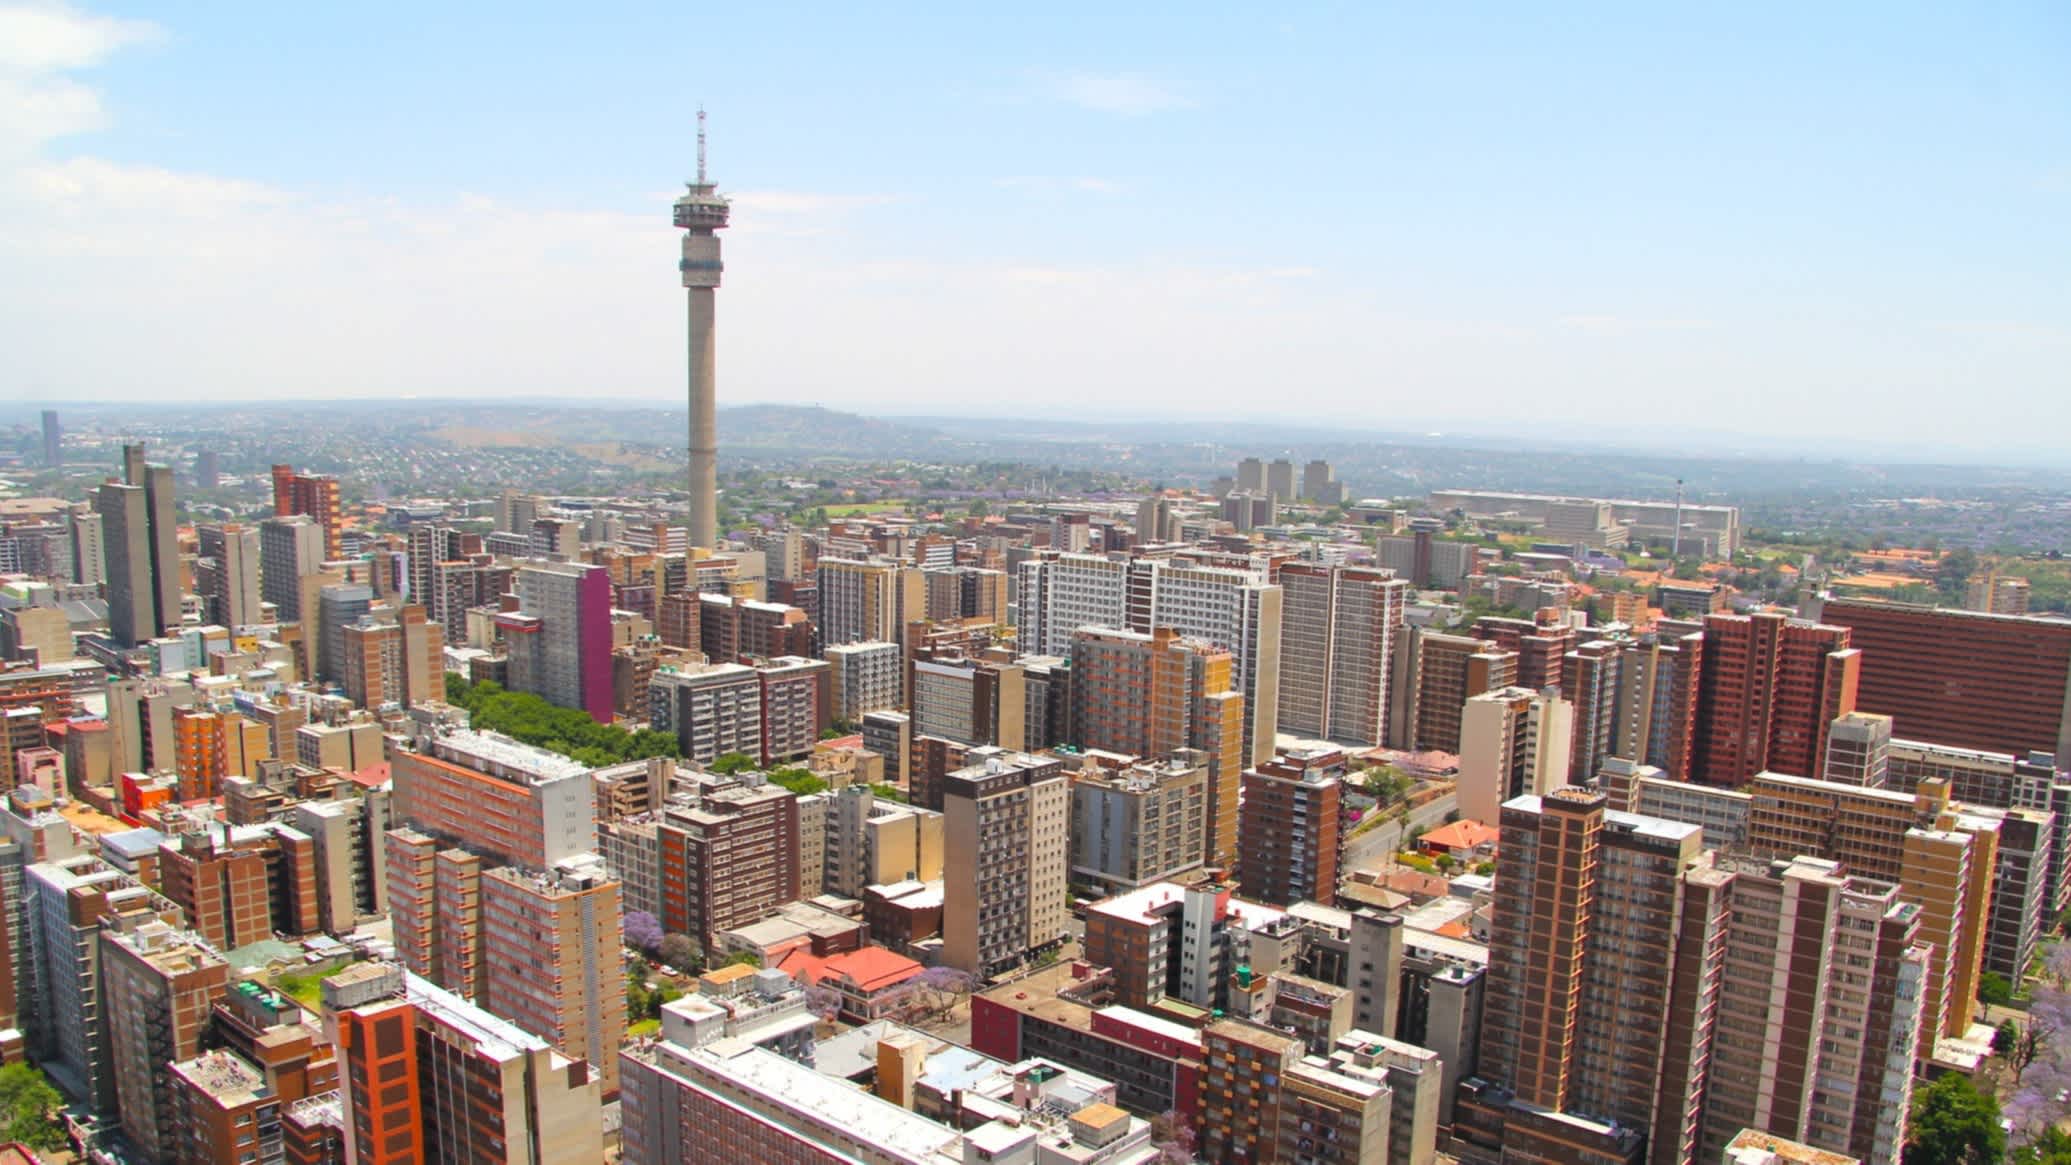 Blick auf die Skyline von Johannesburg in Südafrika